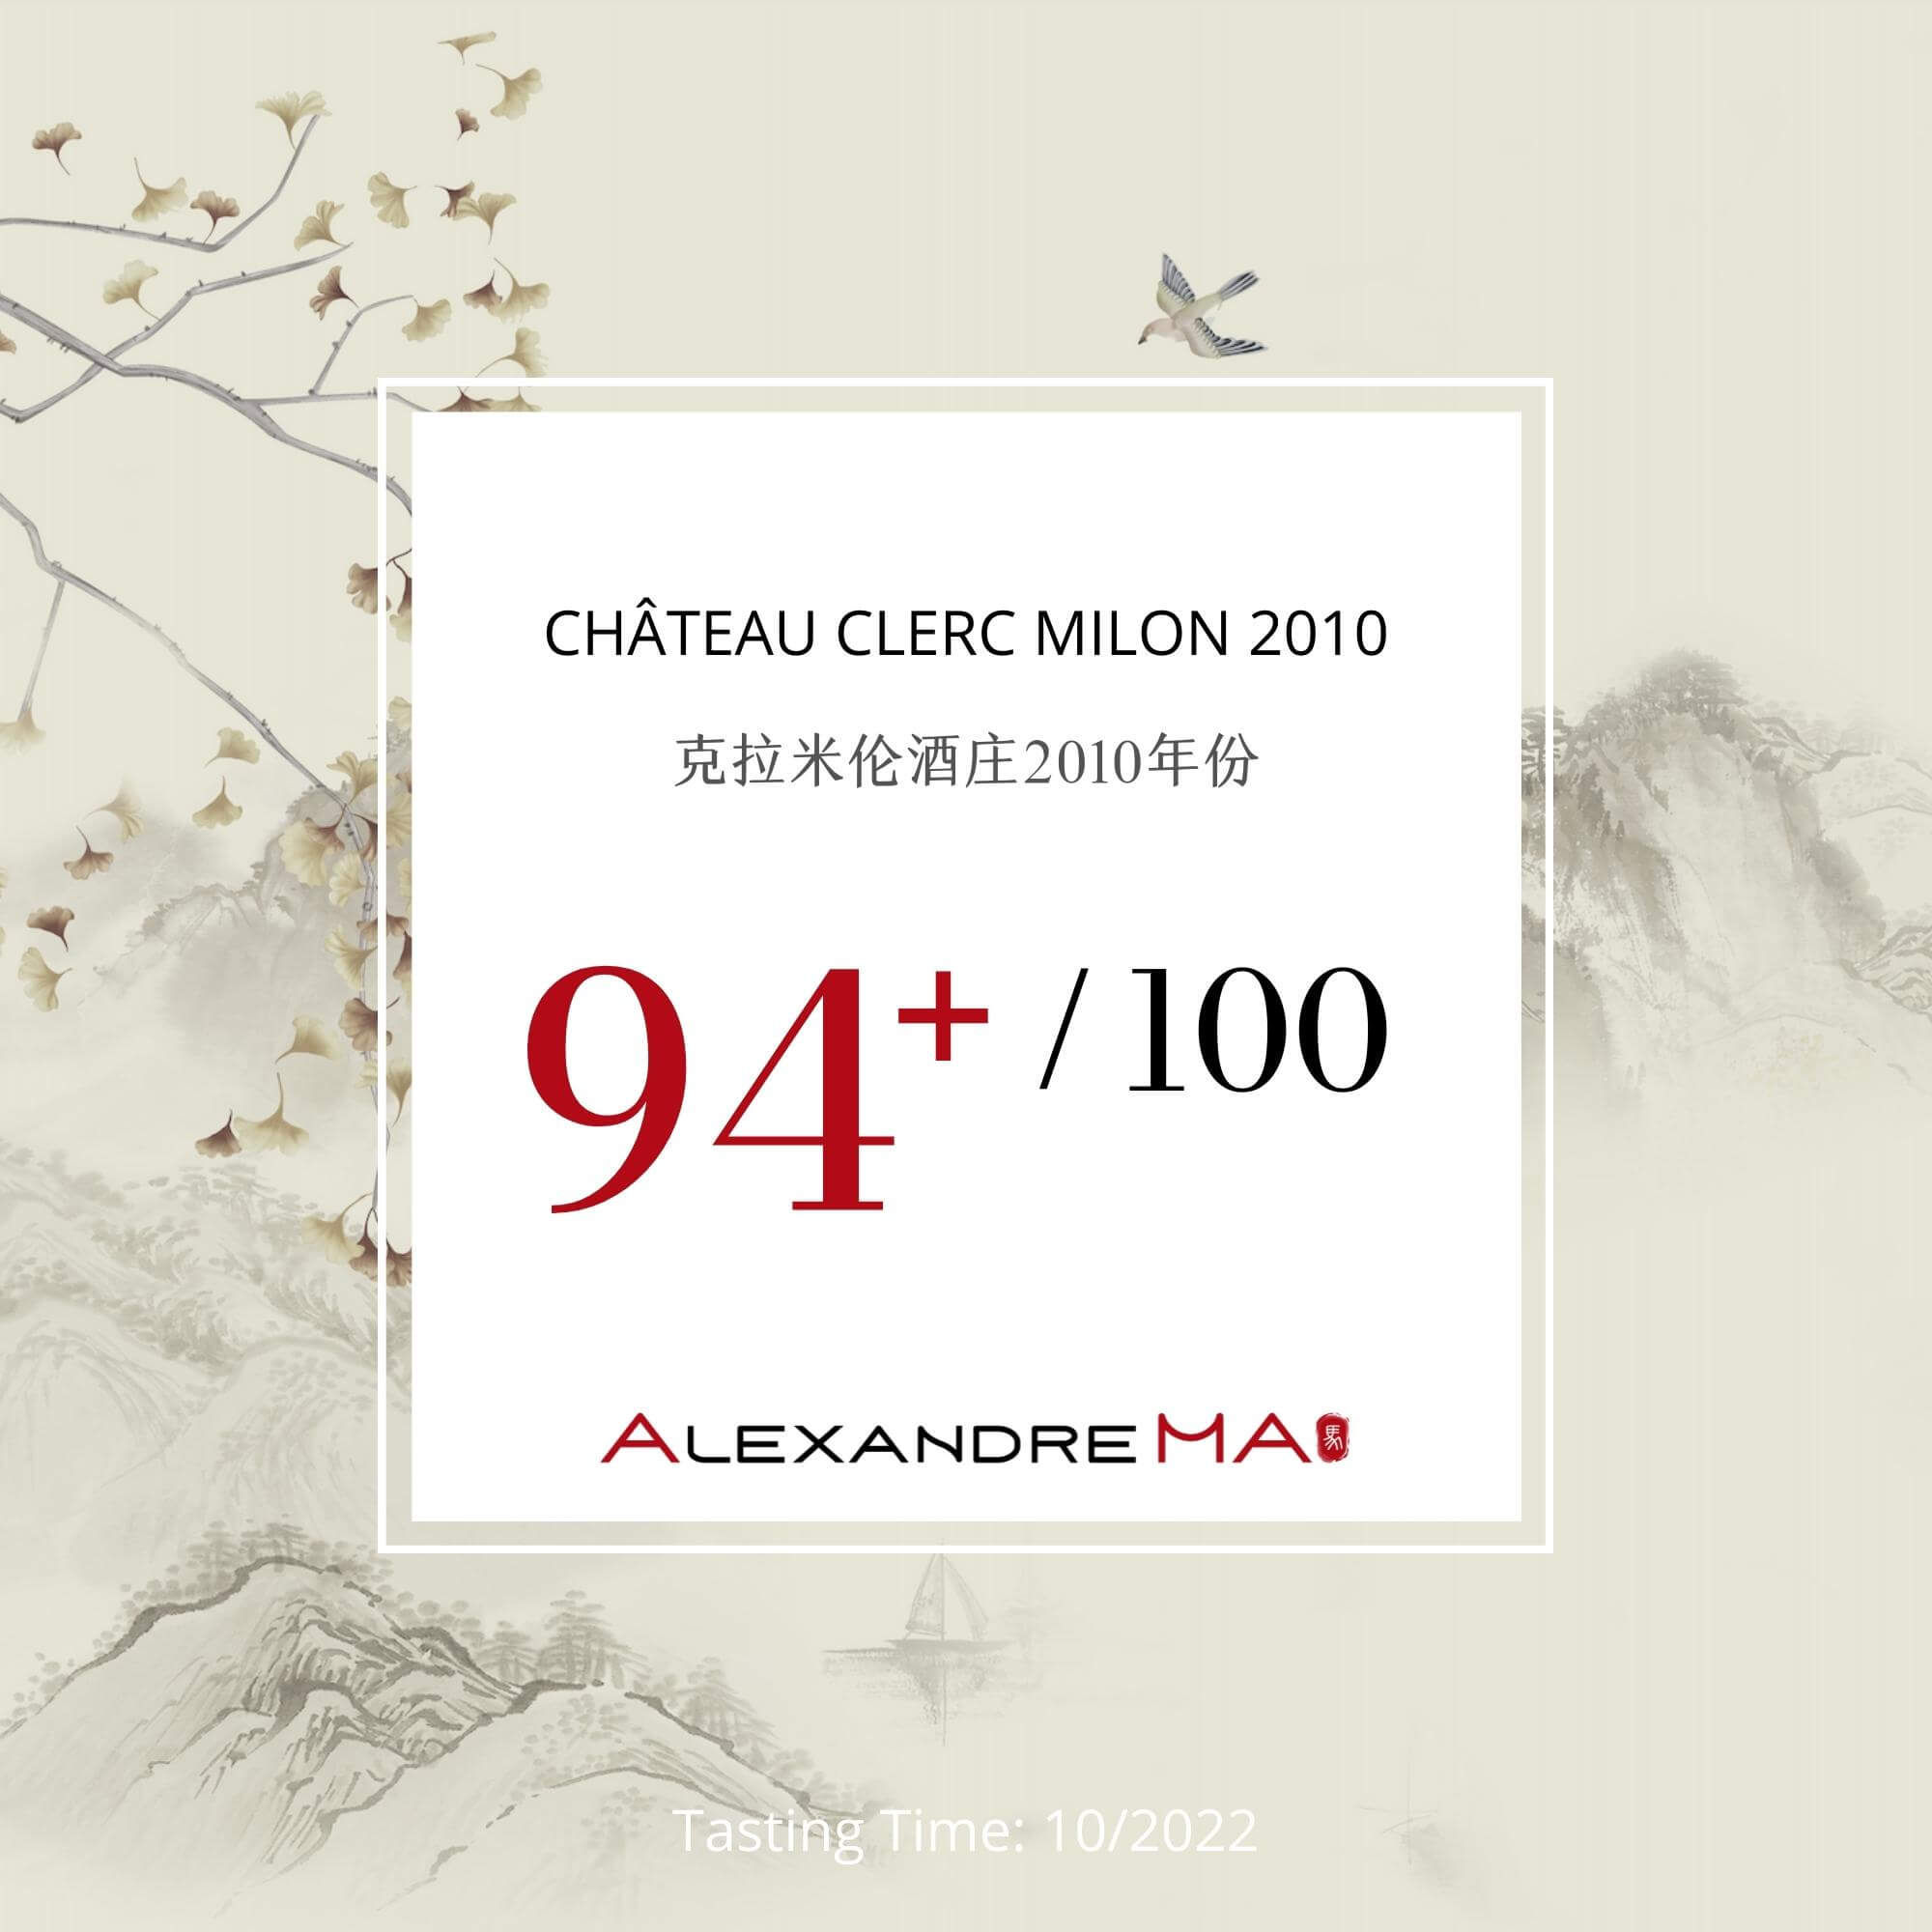 Château Clerc Milon 2010 克拉米伦酒庄 - Alexandre Ma